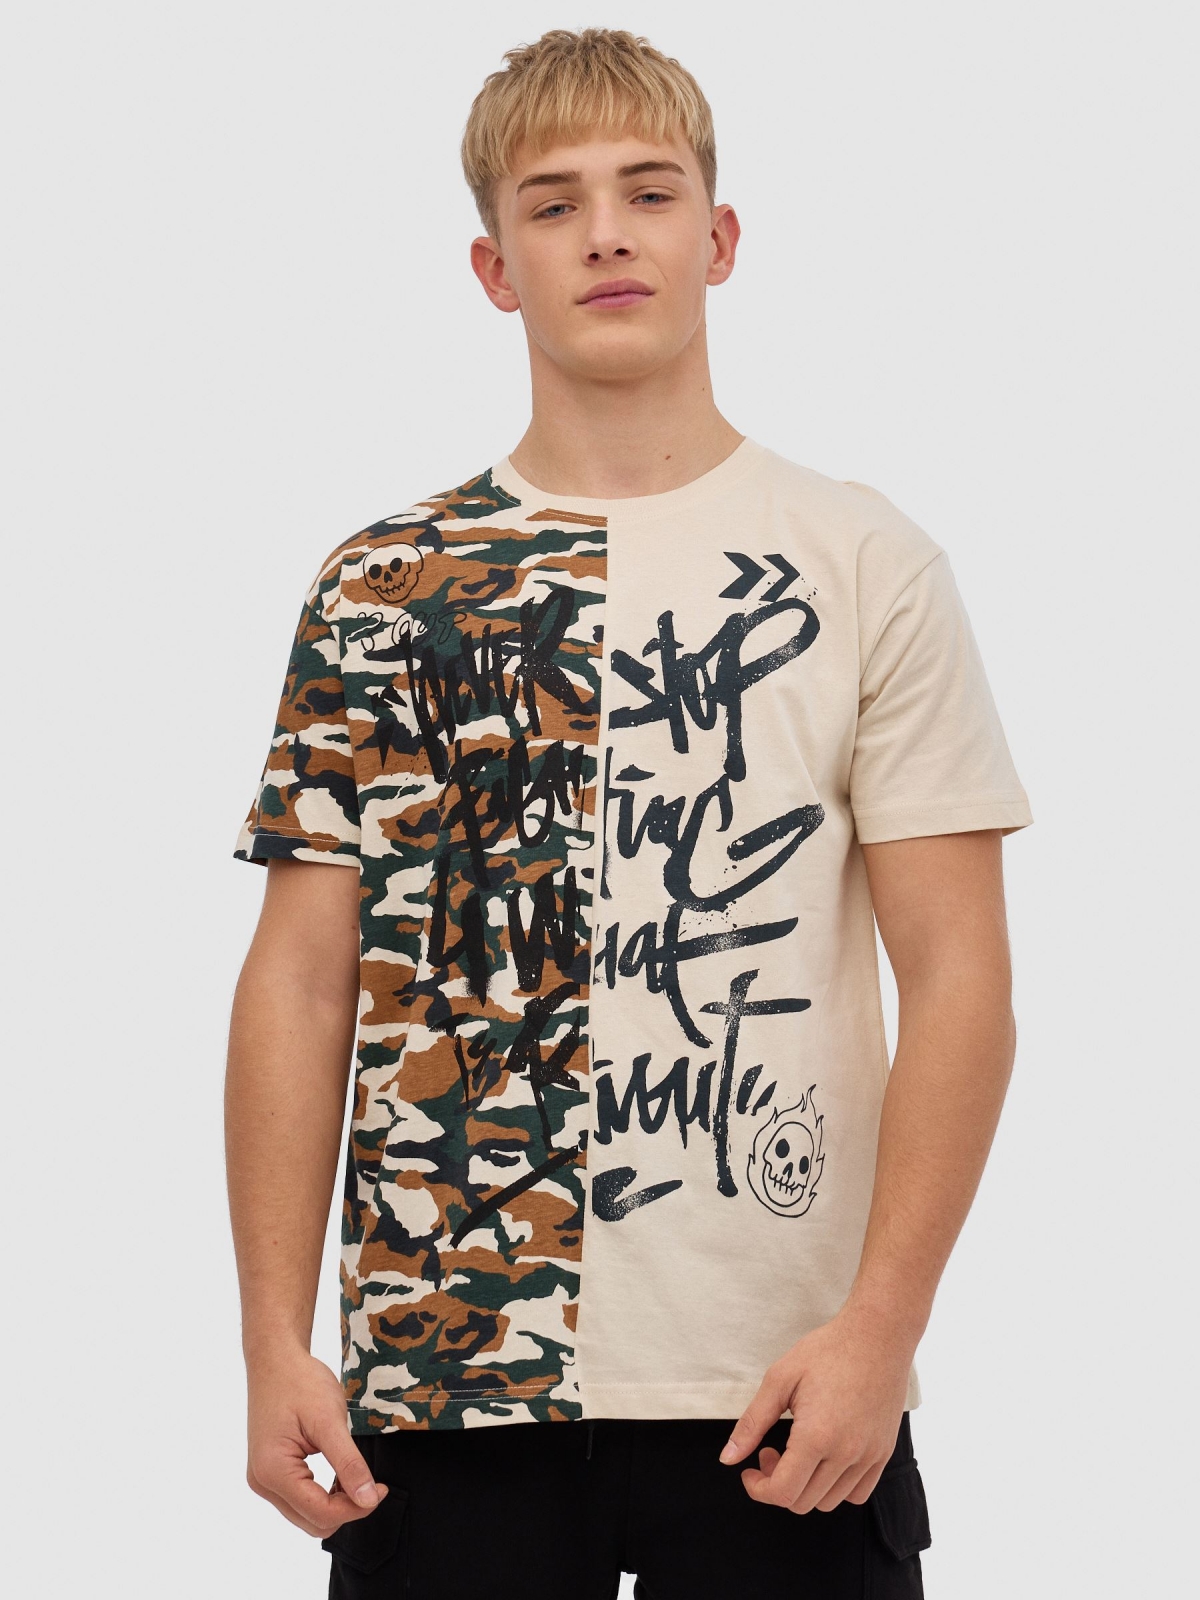 T-shirt de camuflagem com graffiti areia vista meia frontal